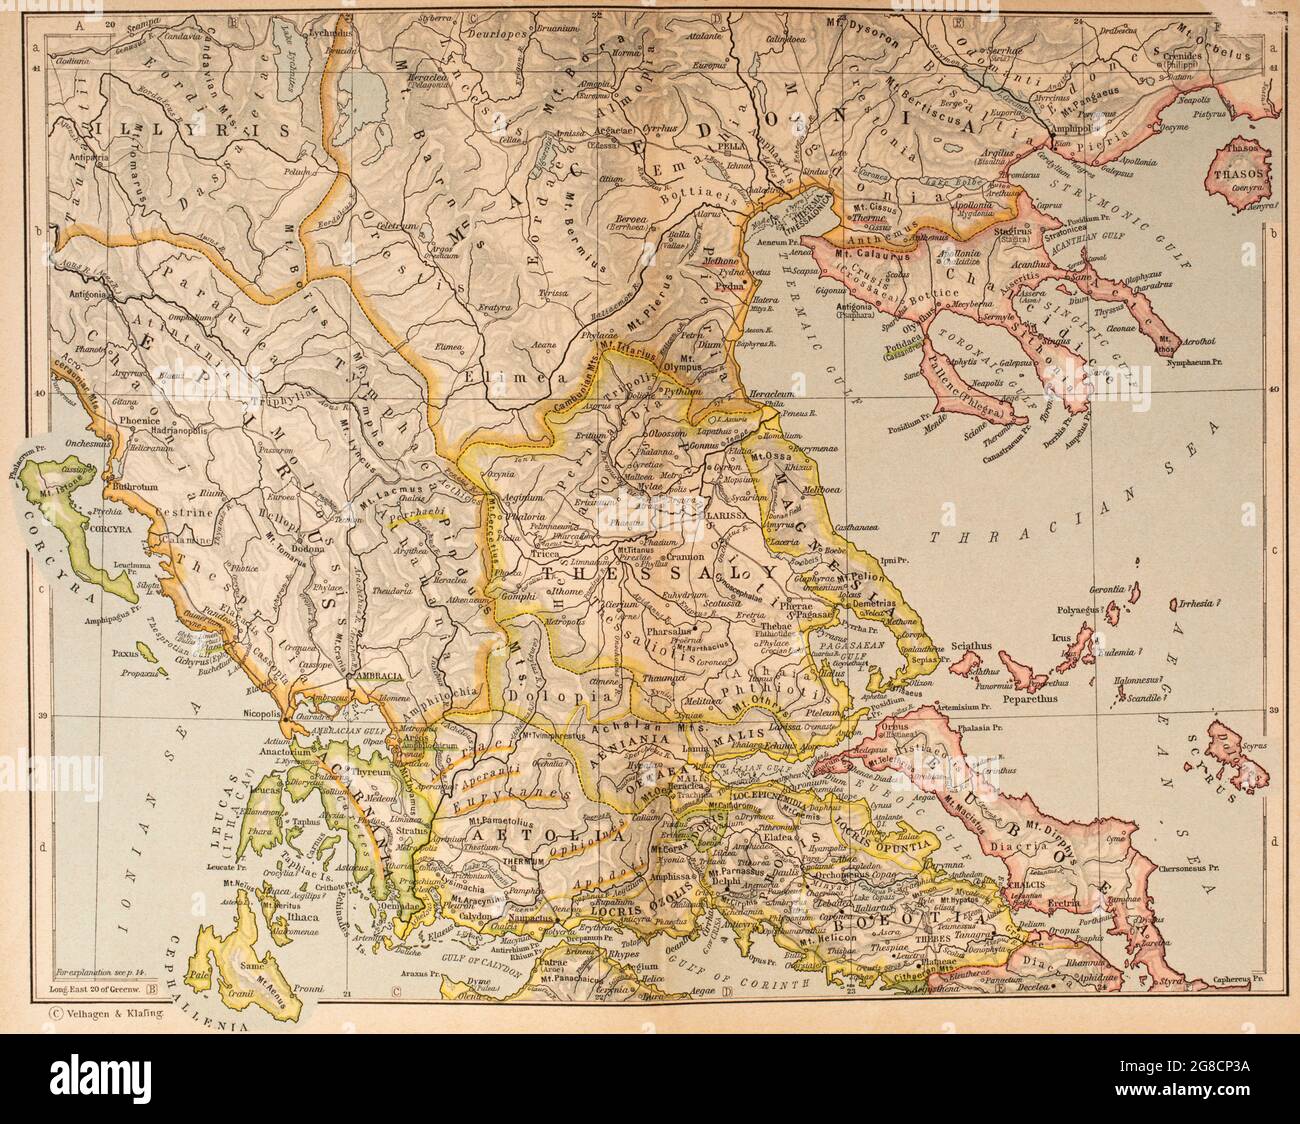 Carte de la Grèce antique, partie nord. De l'Atlas historique, publié en 1923. Banque D'Images